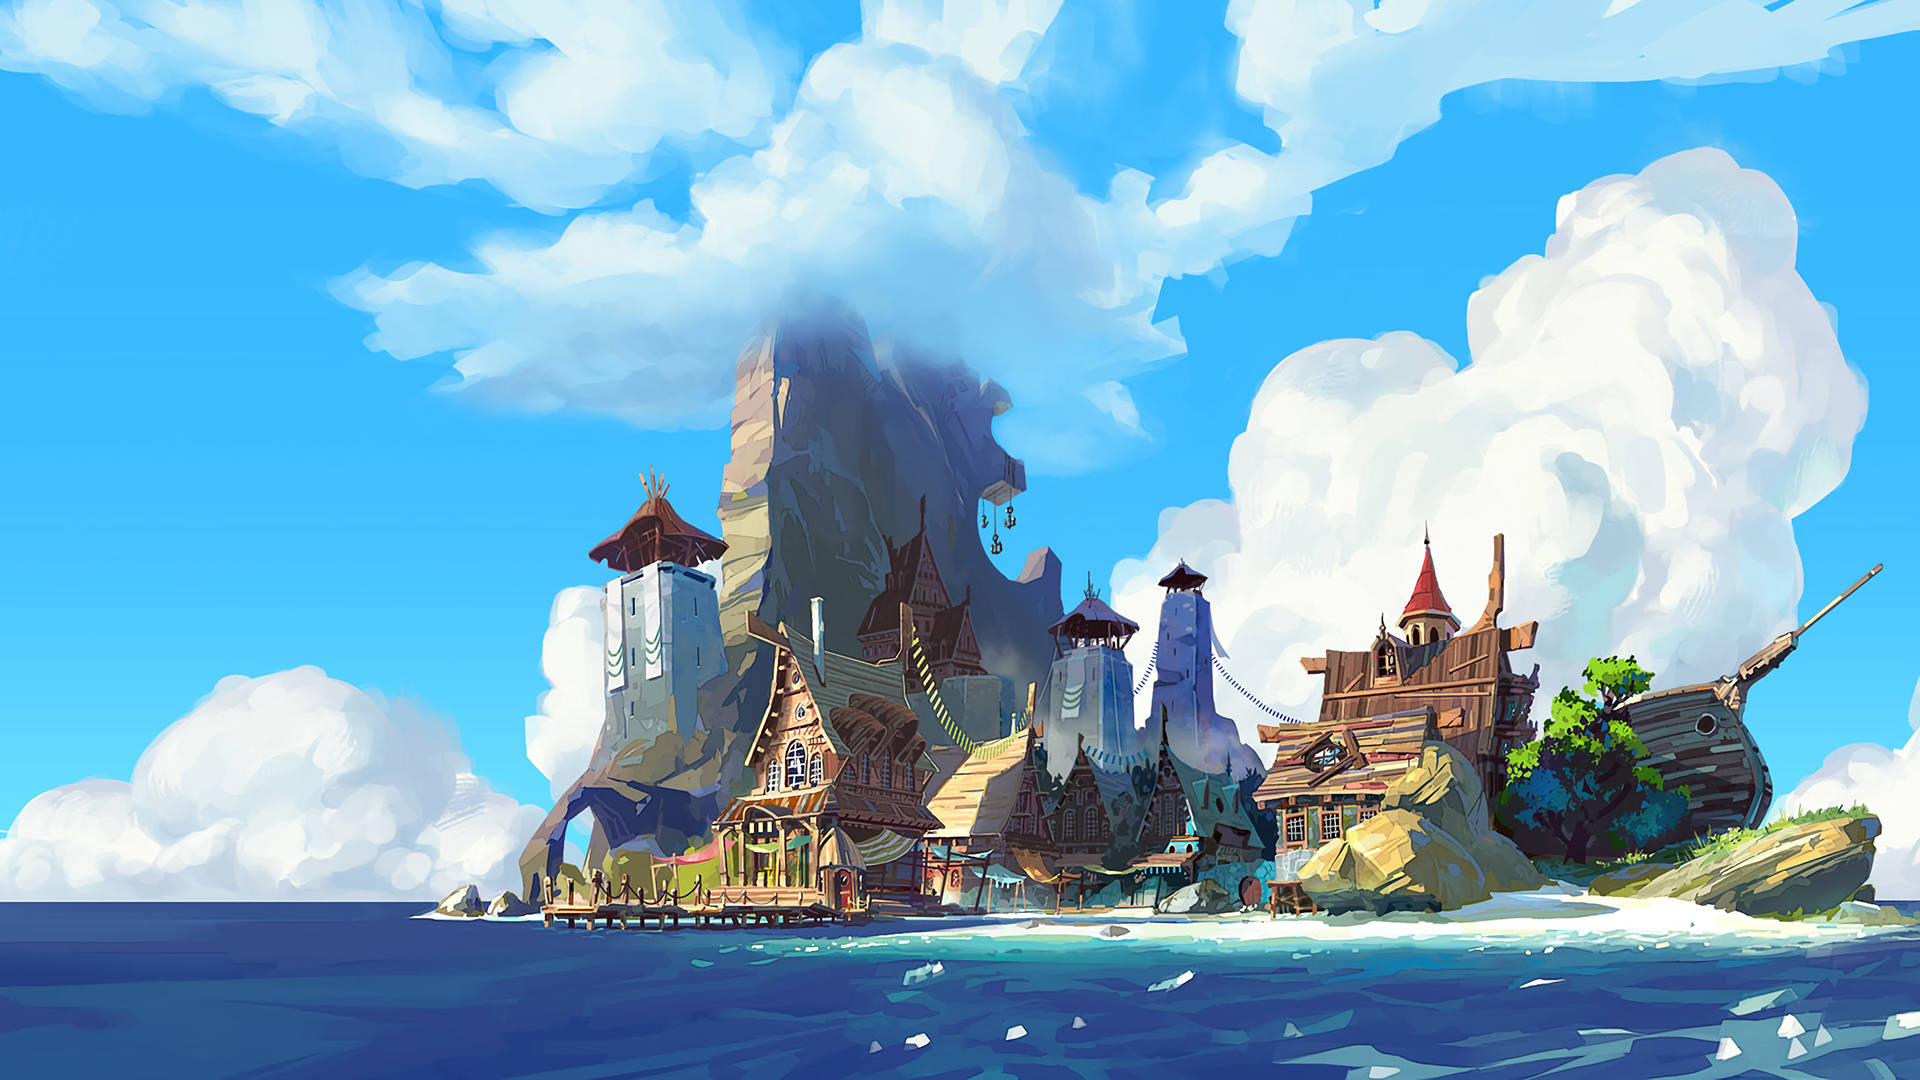 Fantasy Island In The Sea